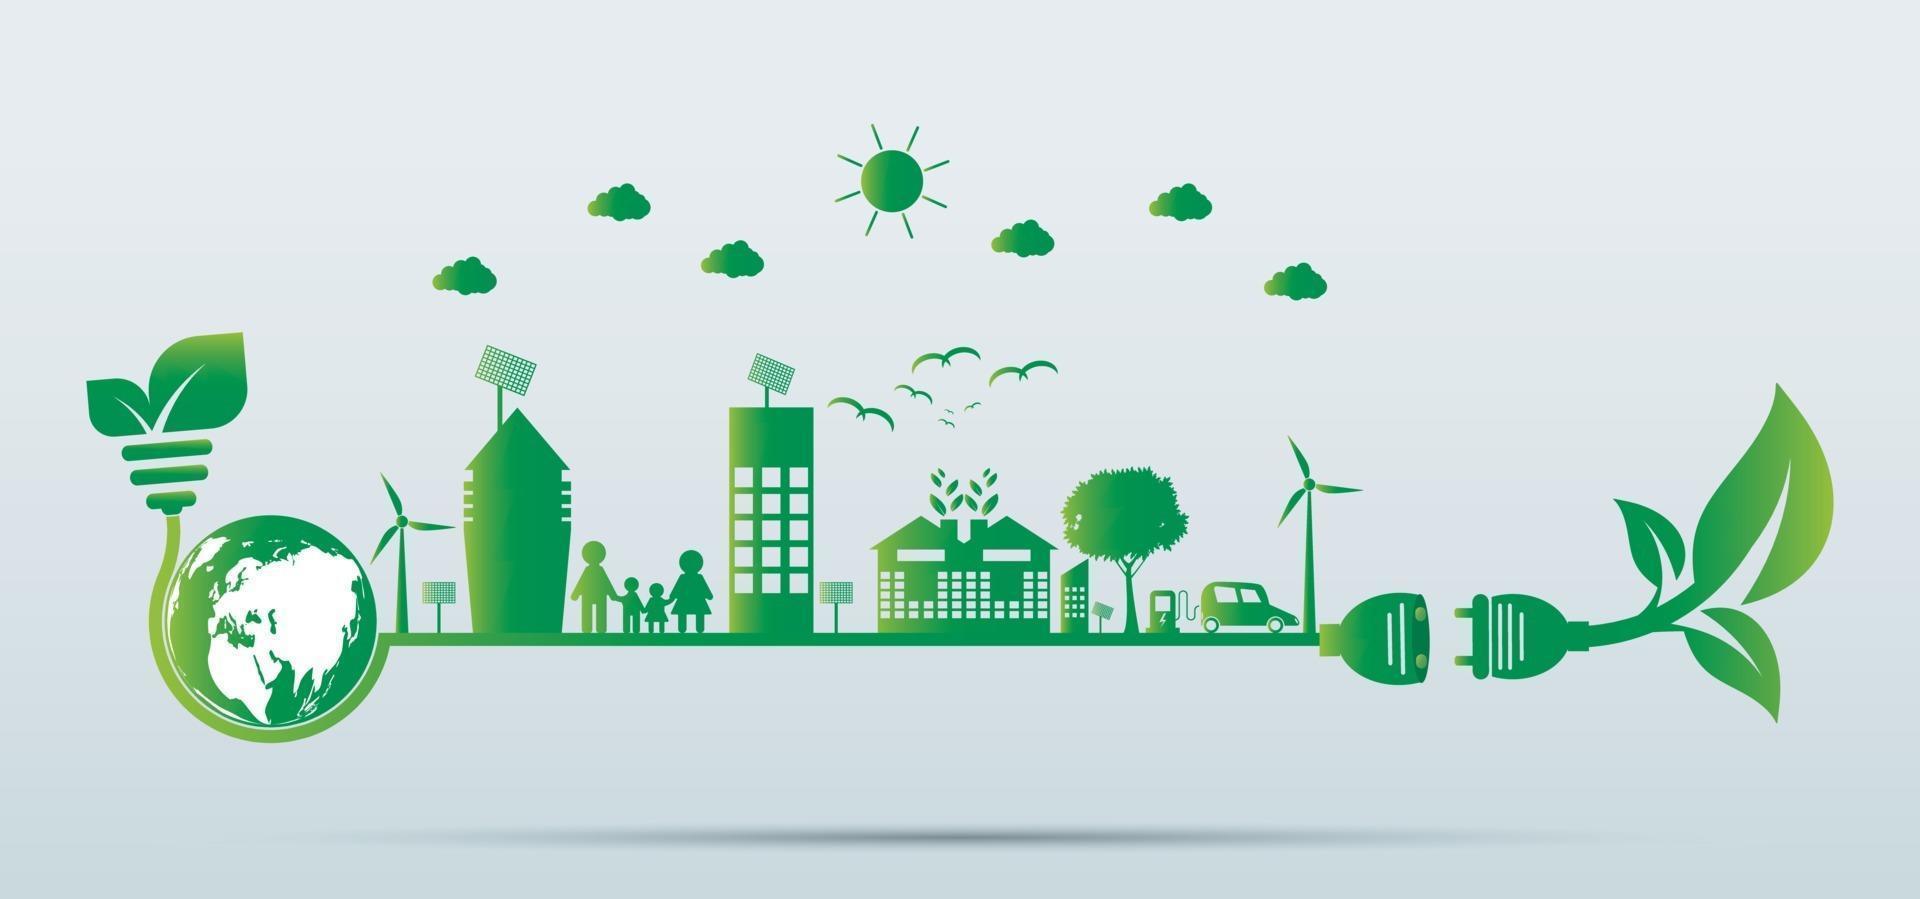 crescimento urbano sustentável na cidade ecologia cidades verdes ajudam o mundo com ideias de conceitos ecologicamente corretos vetor